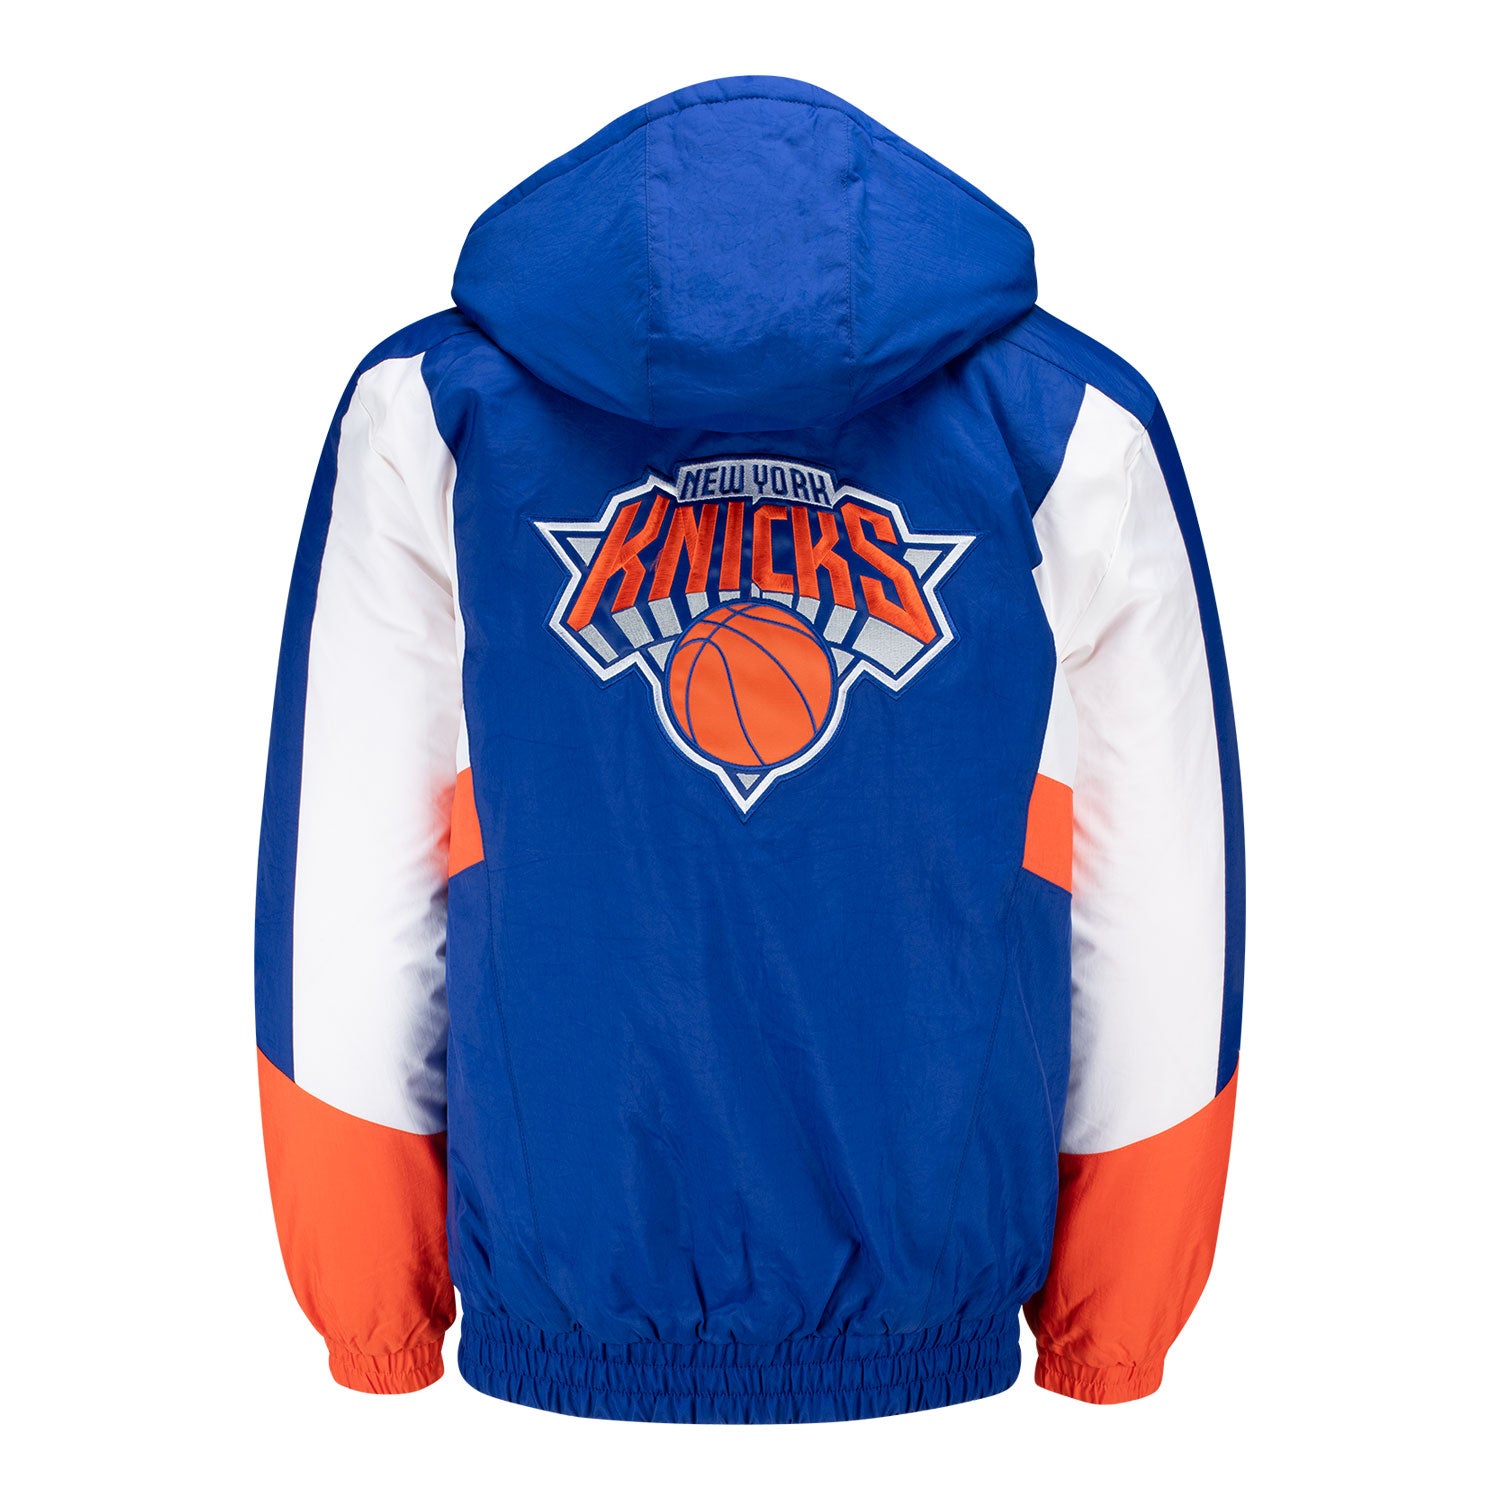 Starter Knicks Full Back Polyfill Jacket